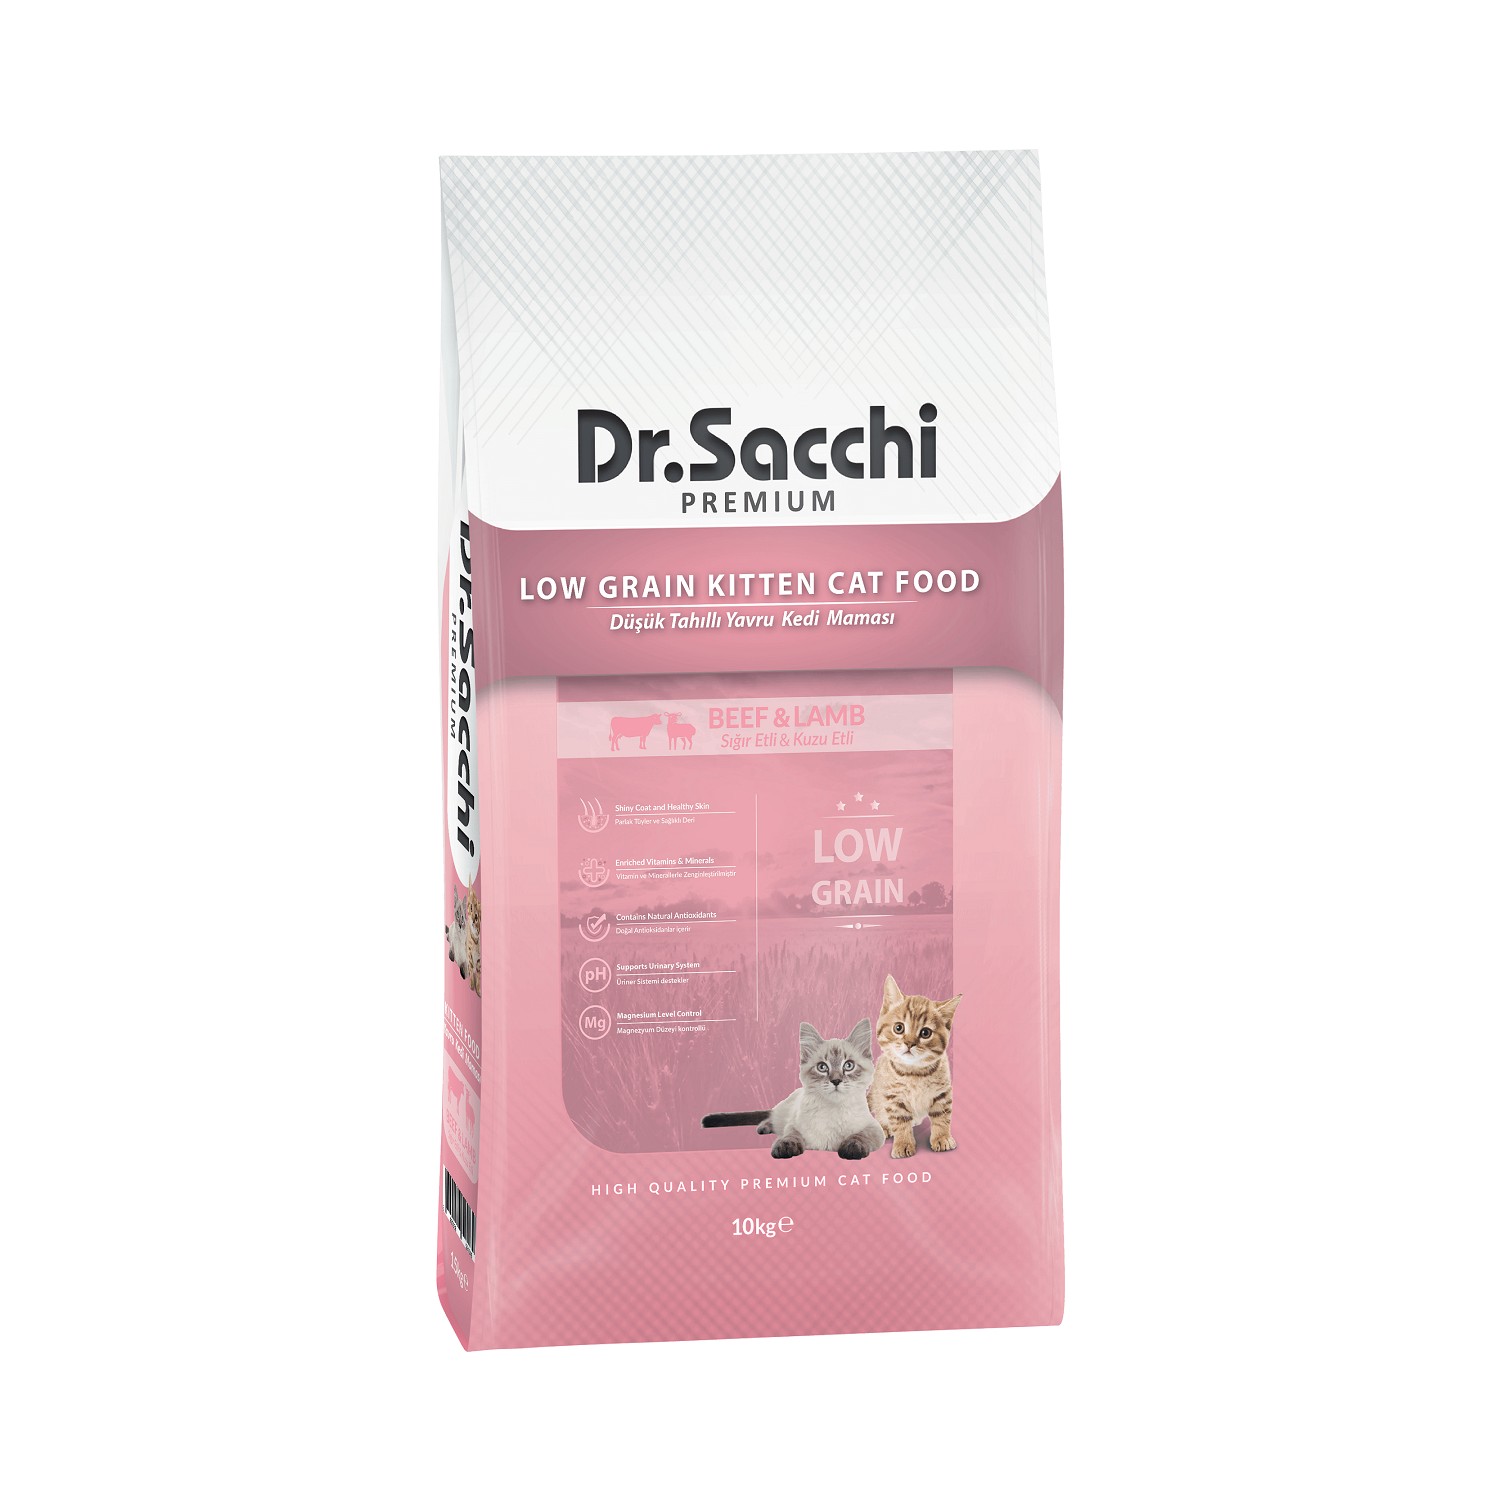 Dr. Sacchi Premium 10 kg Yavru Kedi Maması Fiyatı